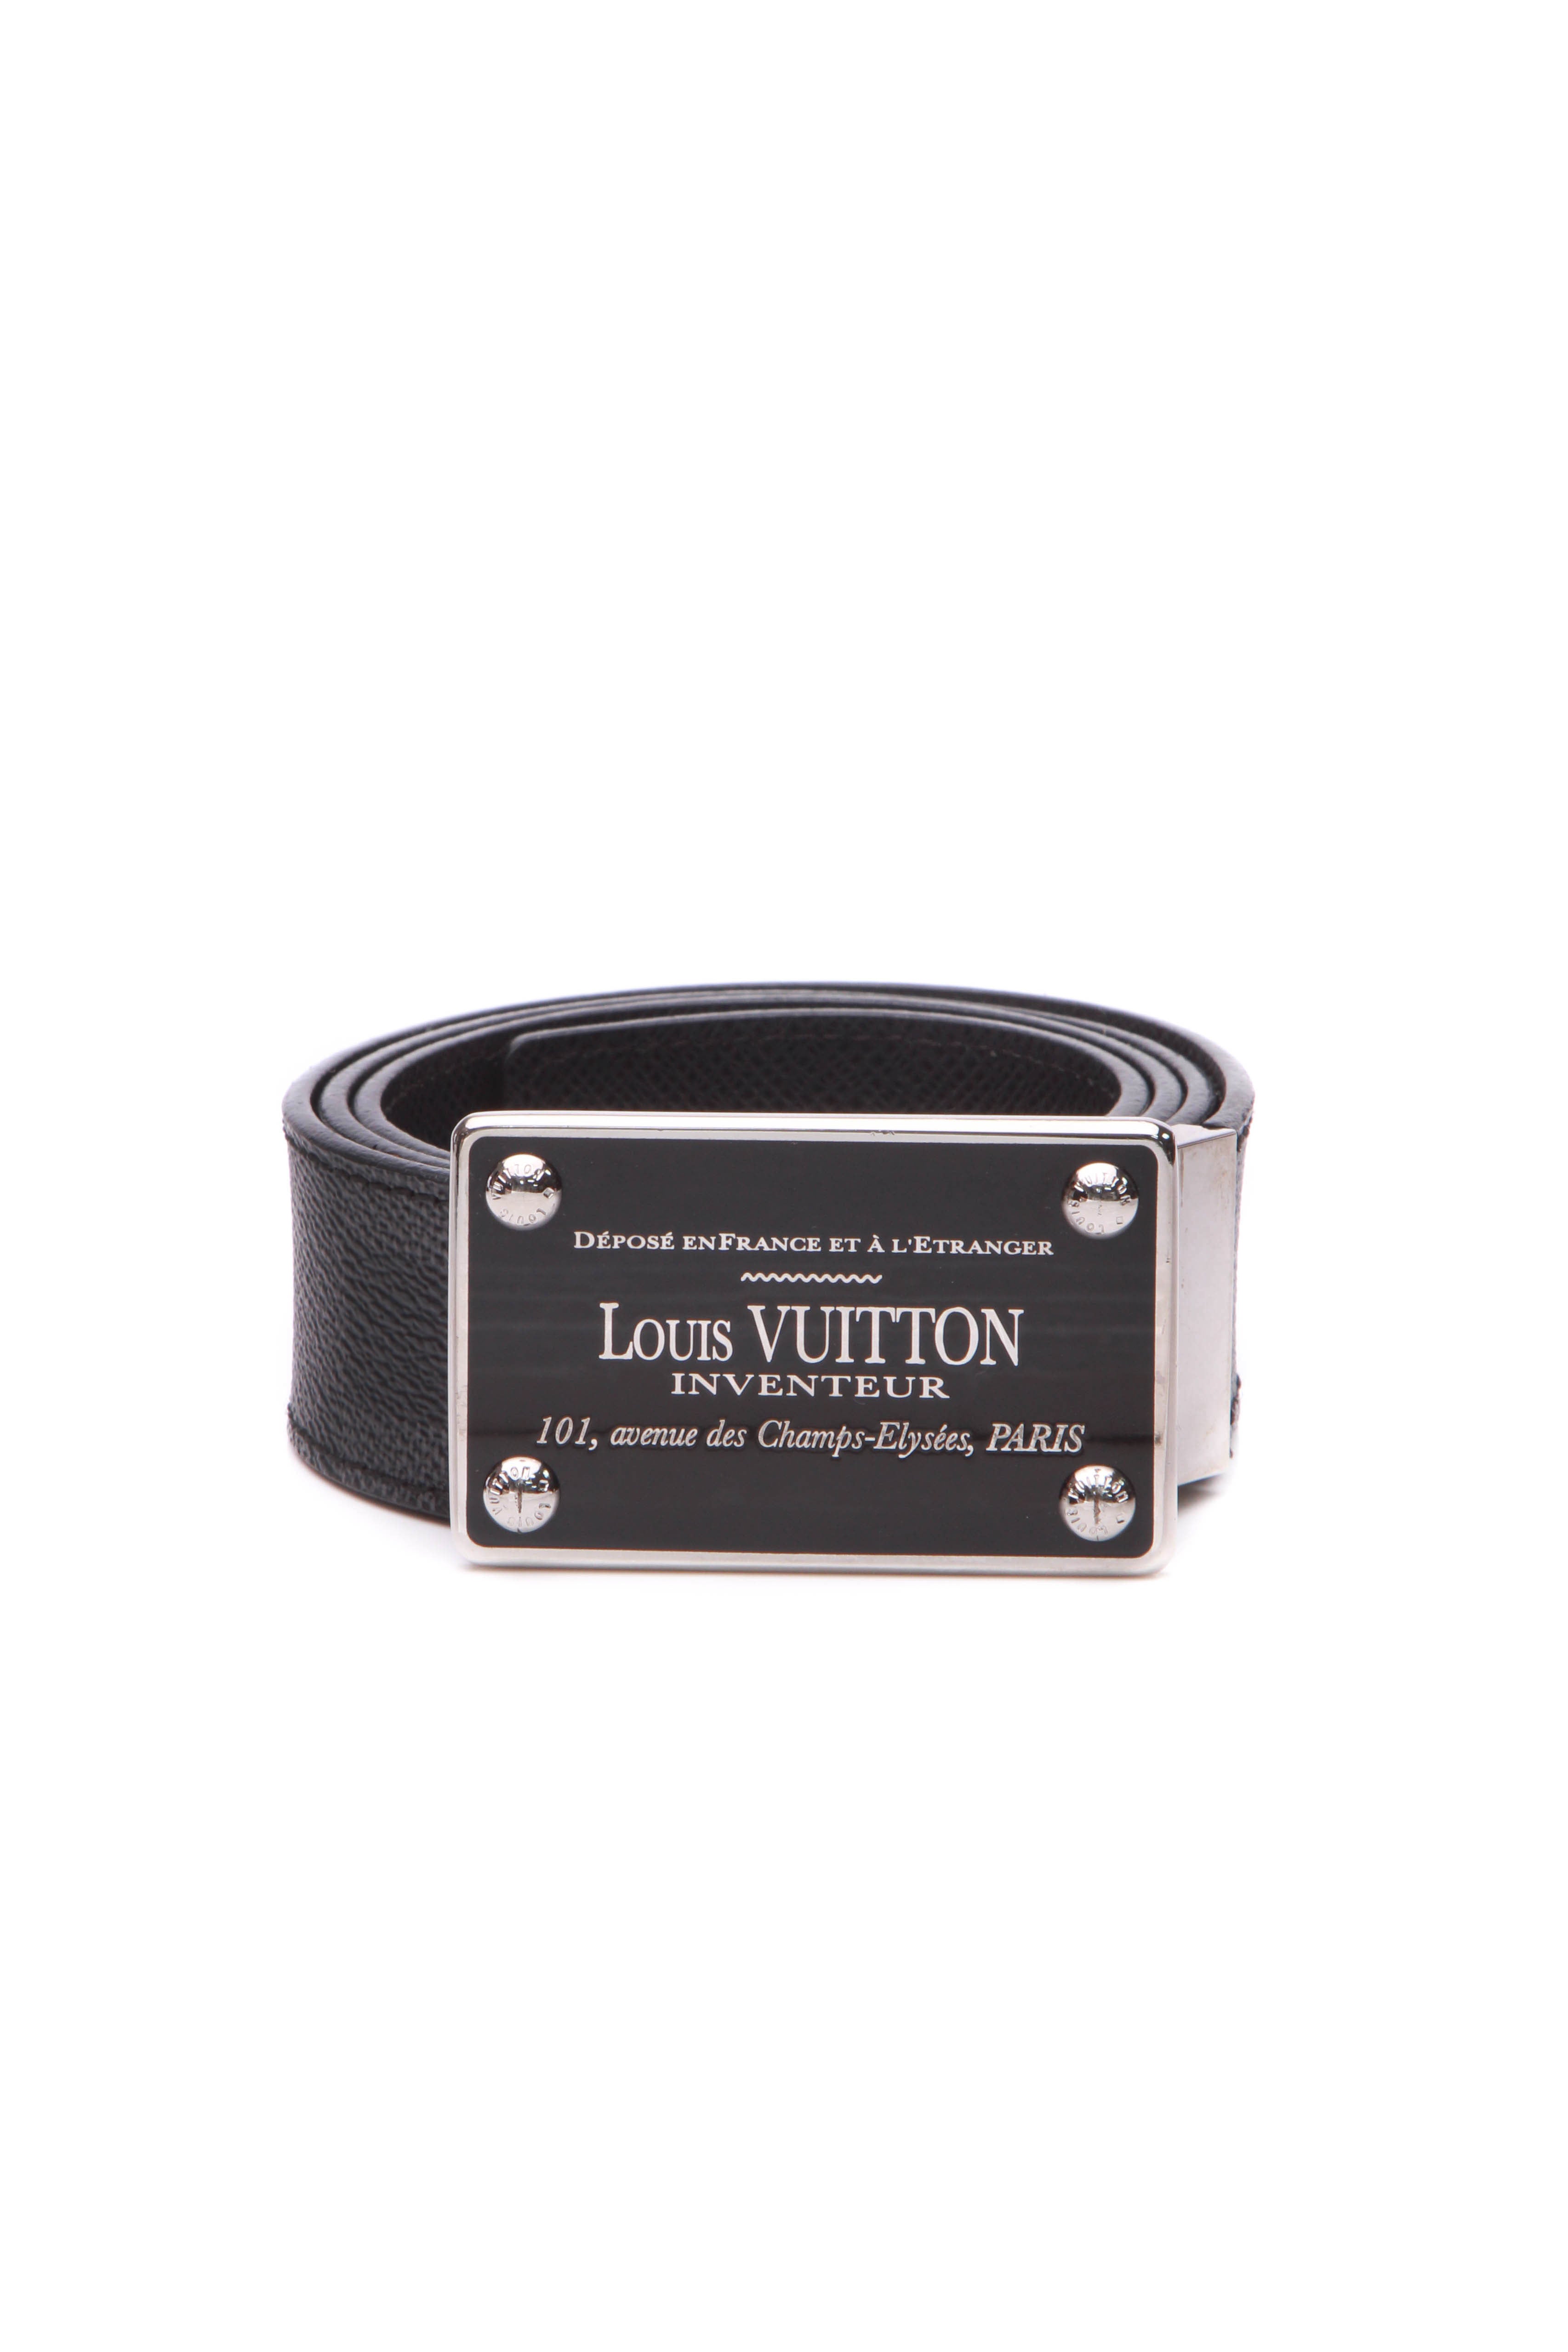 Authentic Louis Vuitton Damier Graphite LV Initials Buckle Belt Size 85/34  M9808